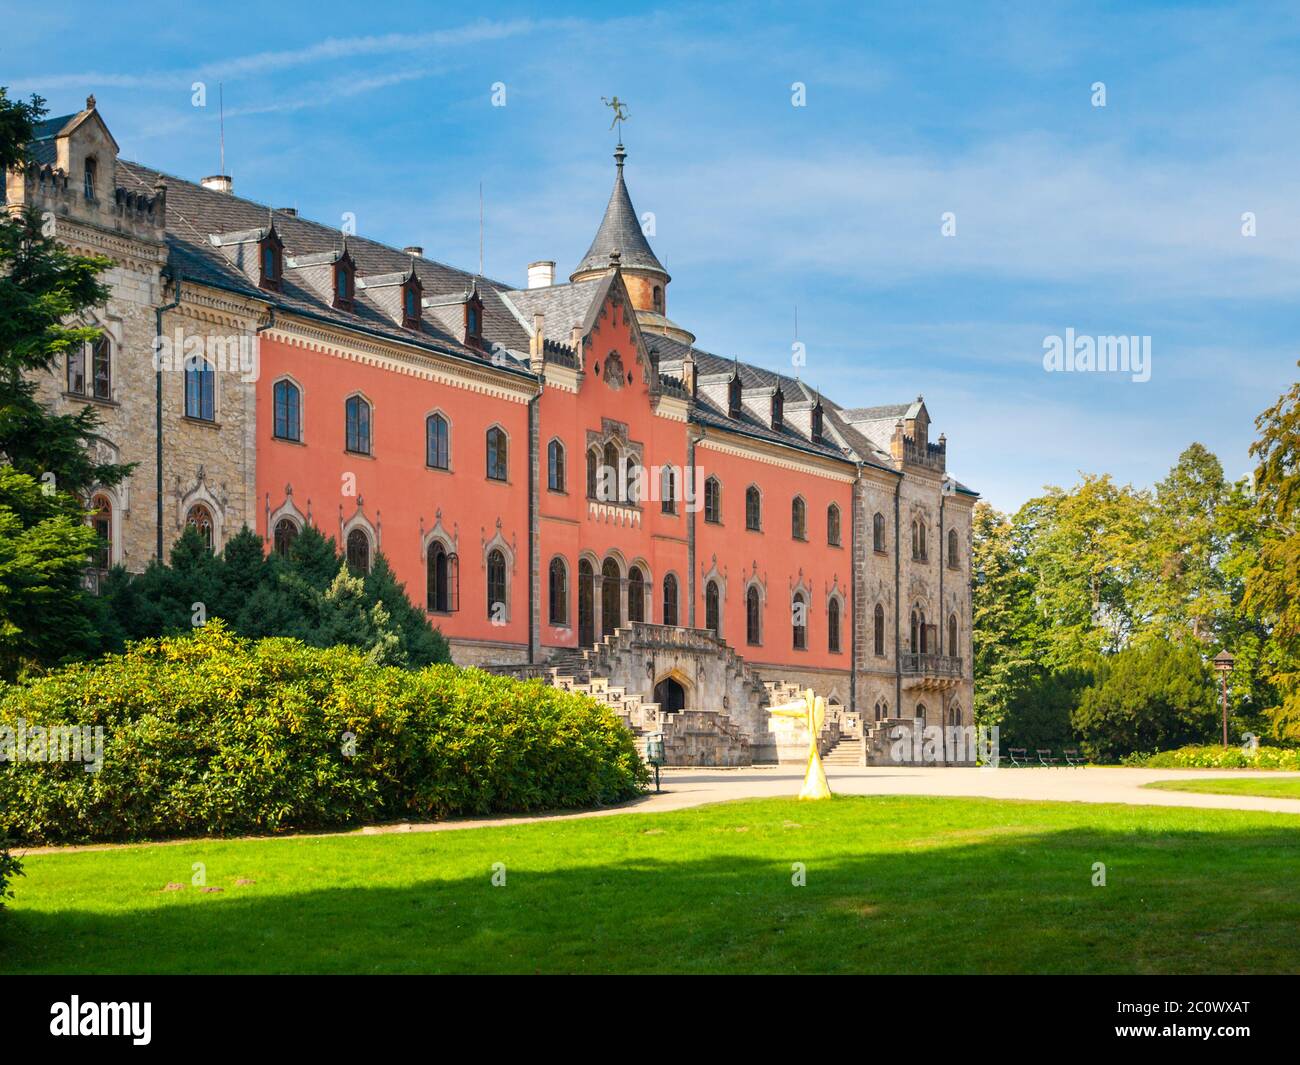 Sychrov Castle mit typisch rosafarbener Fassade. Schloss im neugotischen Stil mit schönem park im englischen Stil. Böhmisches Paradies, Tschechien Stockfoto